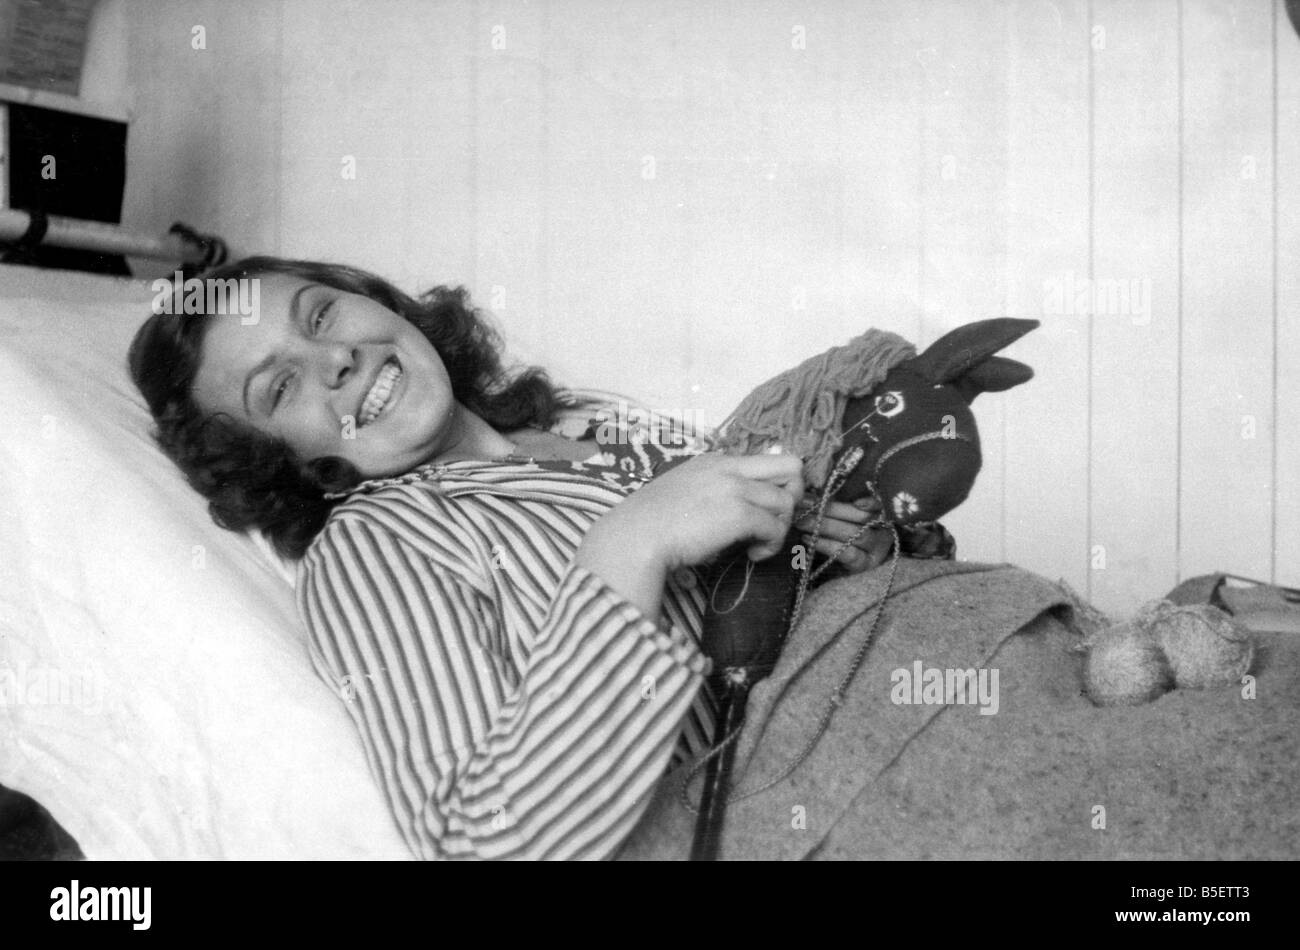 Adolescente Susi Kstona che era stato portato a Belsen campo di concentramento dalla Polonia dai nazisti nel 1943, ora recuperare nella Glyn Hughes hospital di Luneberg dopo la liberazione di camp da parte delle forze alleate. ;Lei tiene un cavallo giocattolo che lei ha fatto dal vecchio tedesco uniformi e pezzetti di legno;Novembre 1945 Foto Stock